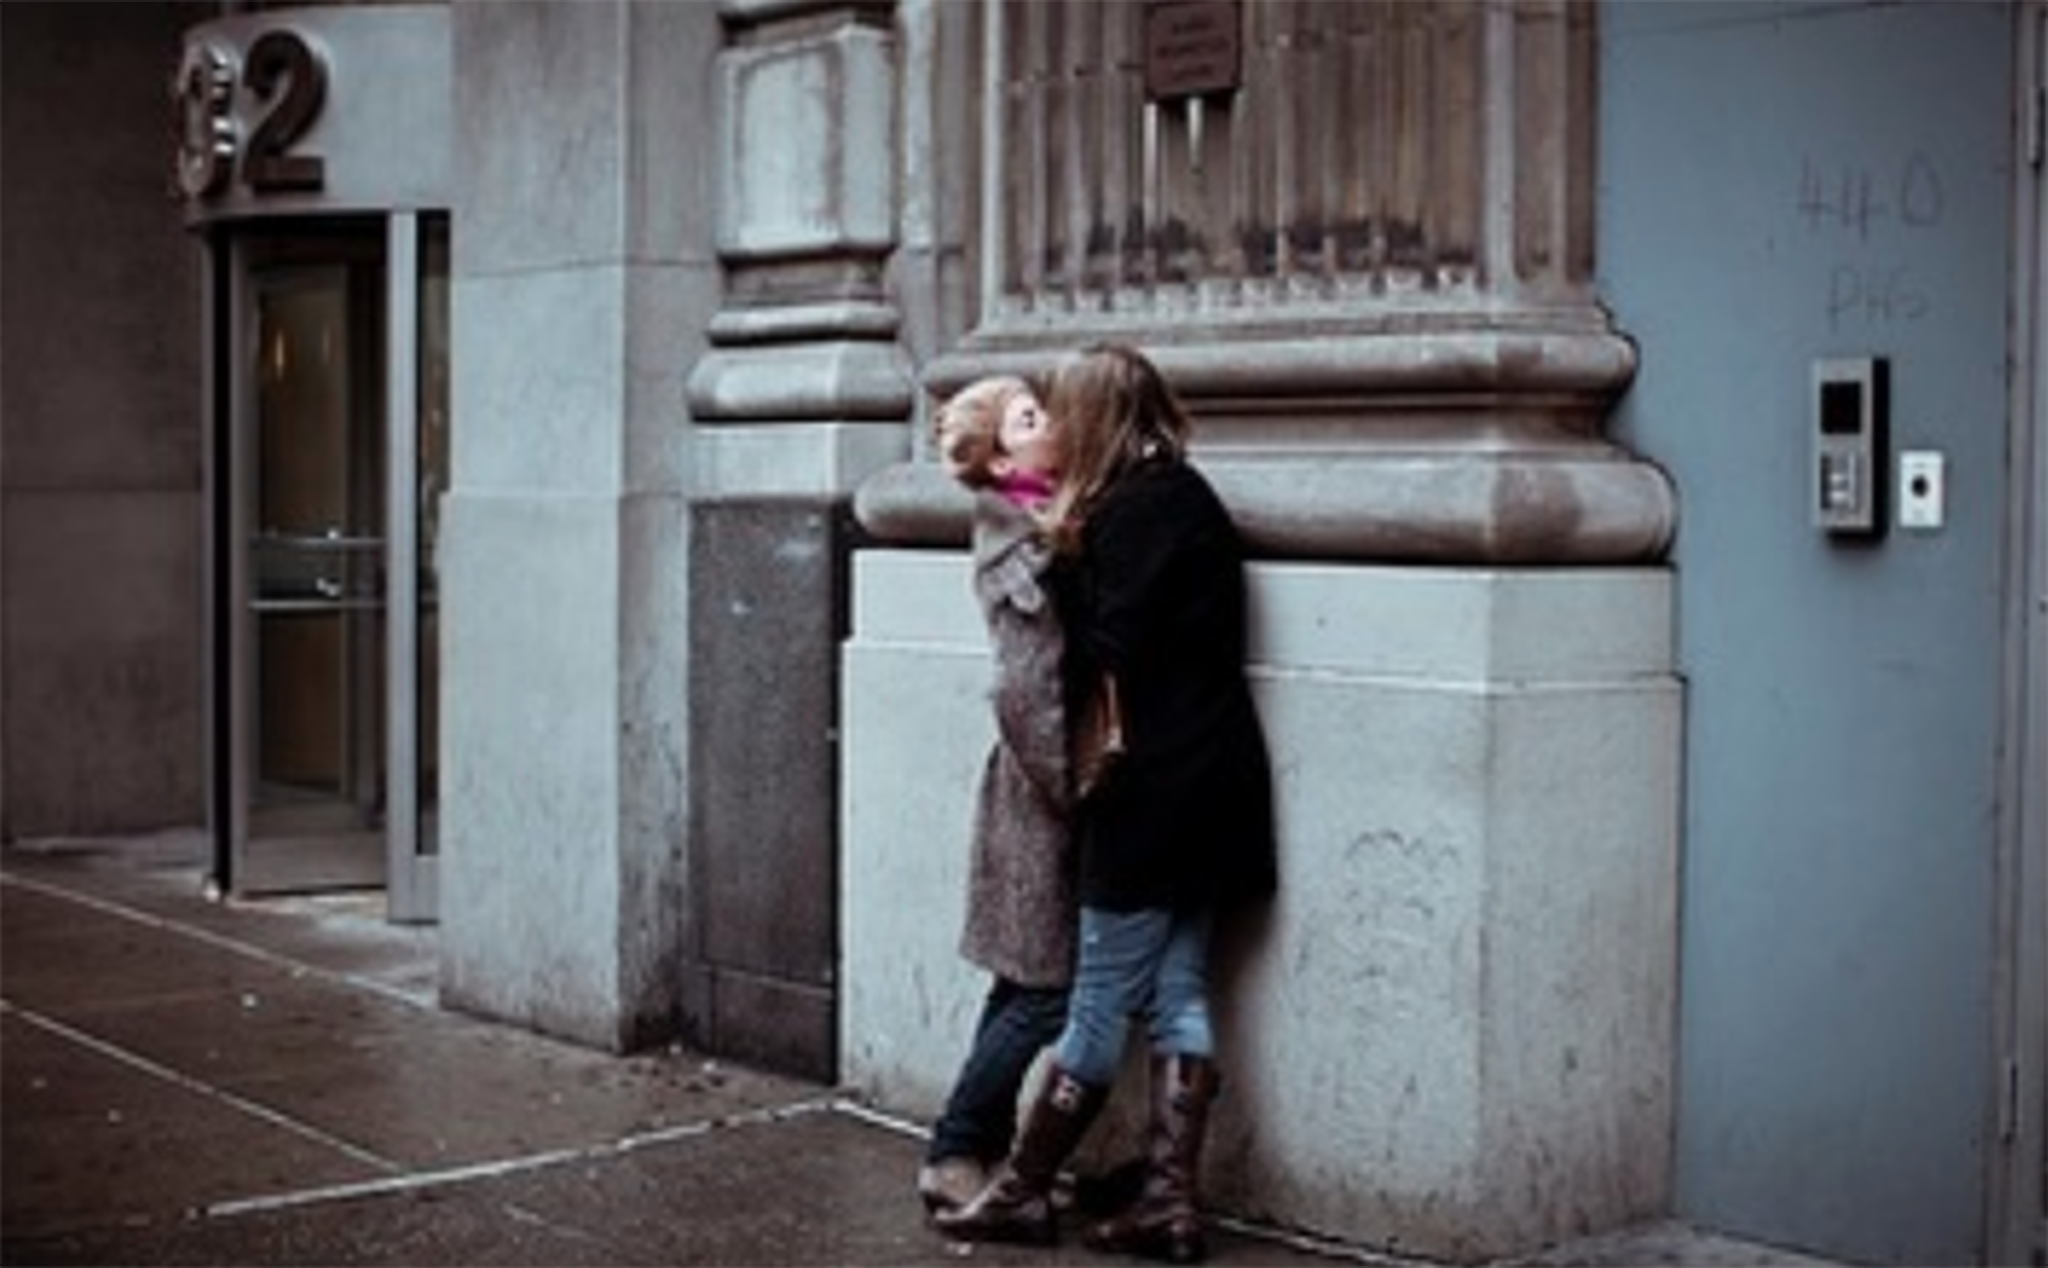 Nhiếp ảnh gia Cristina de Middel tái hiện câu chuyện trong 'Romeo & Juliet' bằng ảnh đường phố